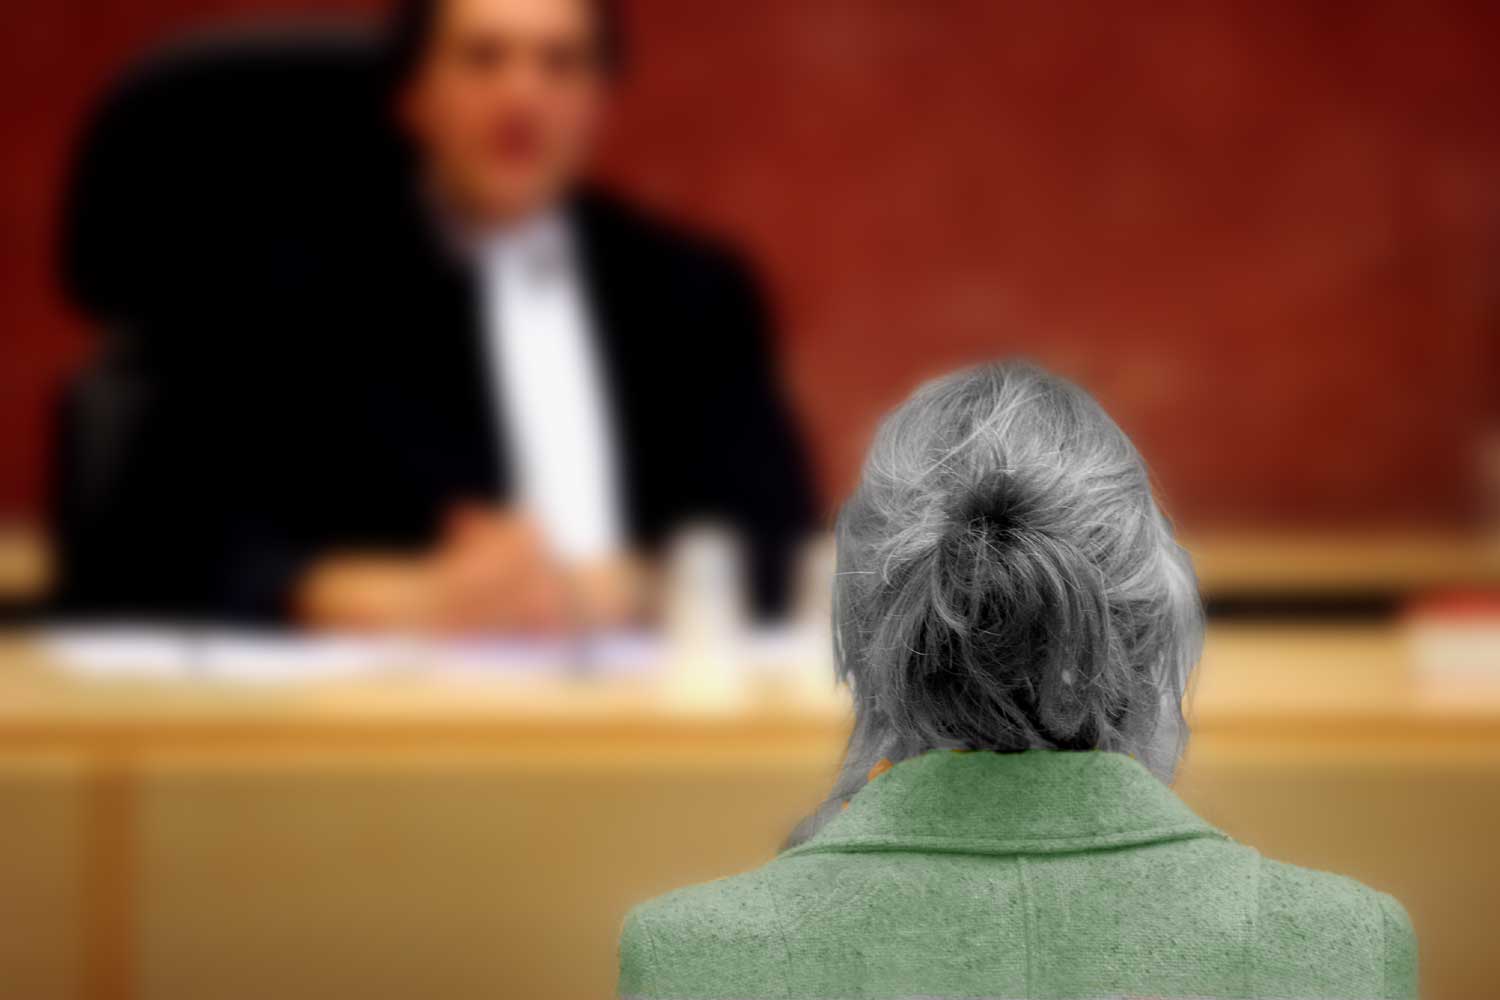  Rechter legt 4 jaar celstraf op aan vrouw (89) voor doodsteken 88-jarige echtgenoot